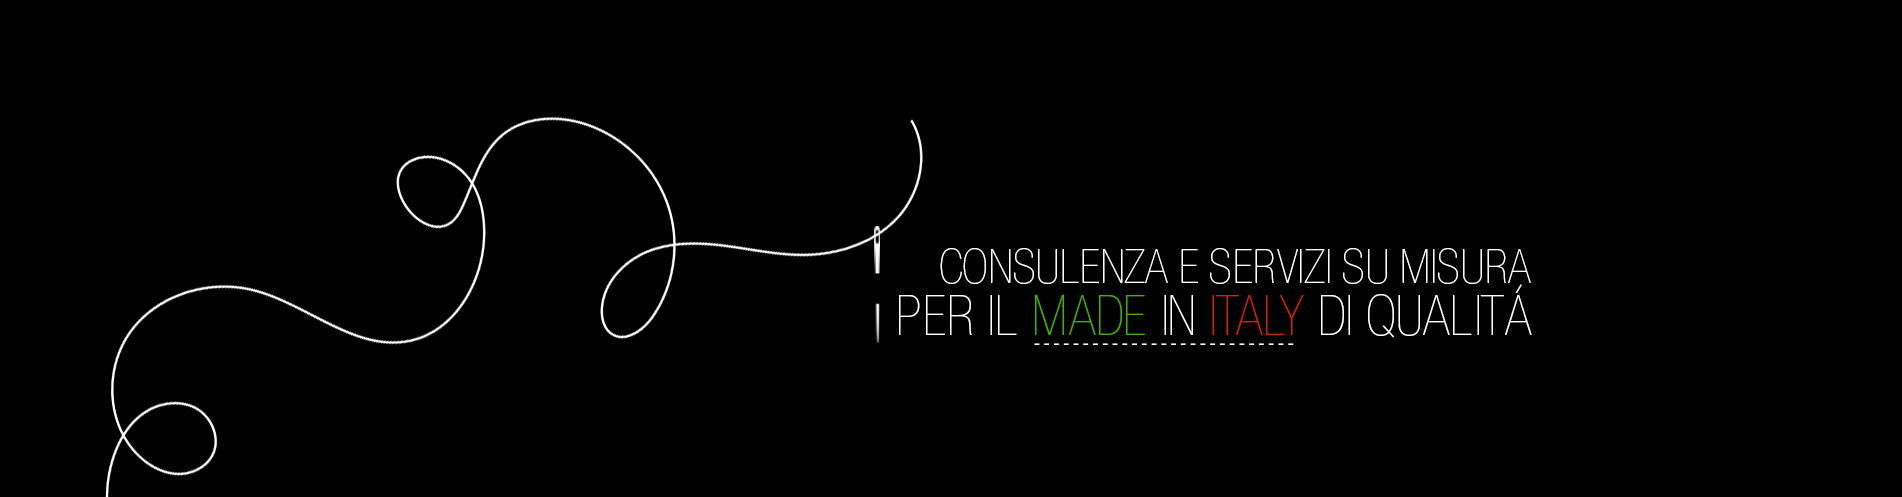 Consulenza e sServizi per il Made in Italy di QualitÃ  - Artitaly